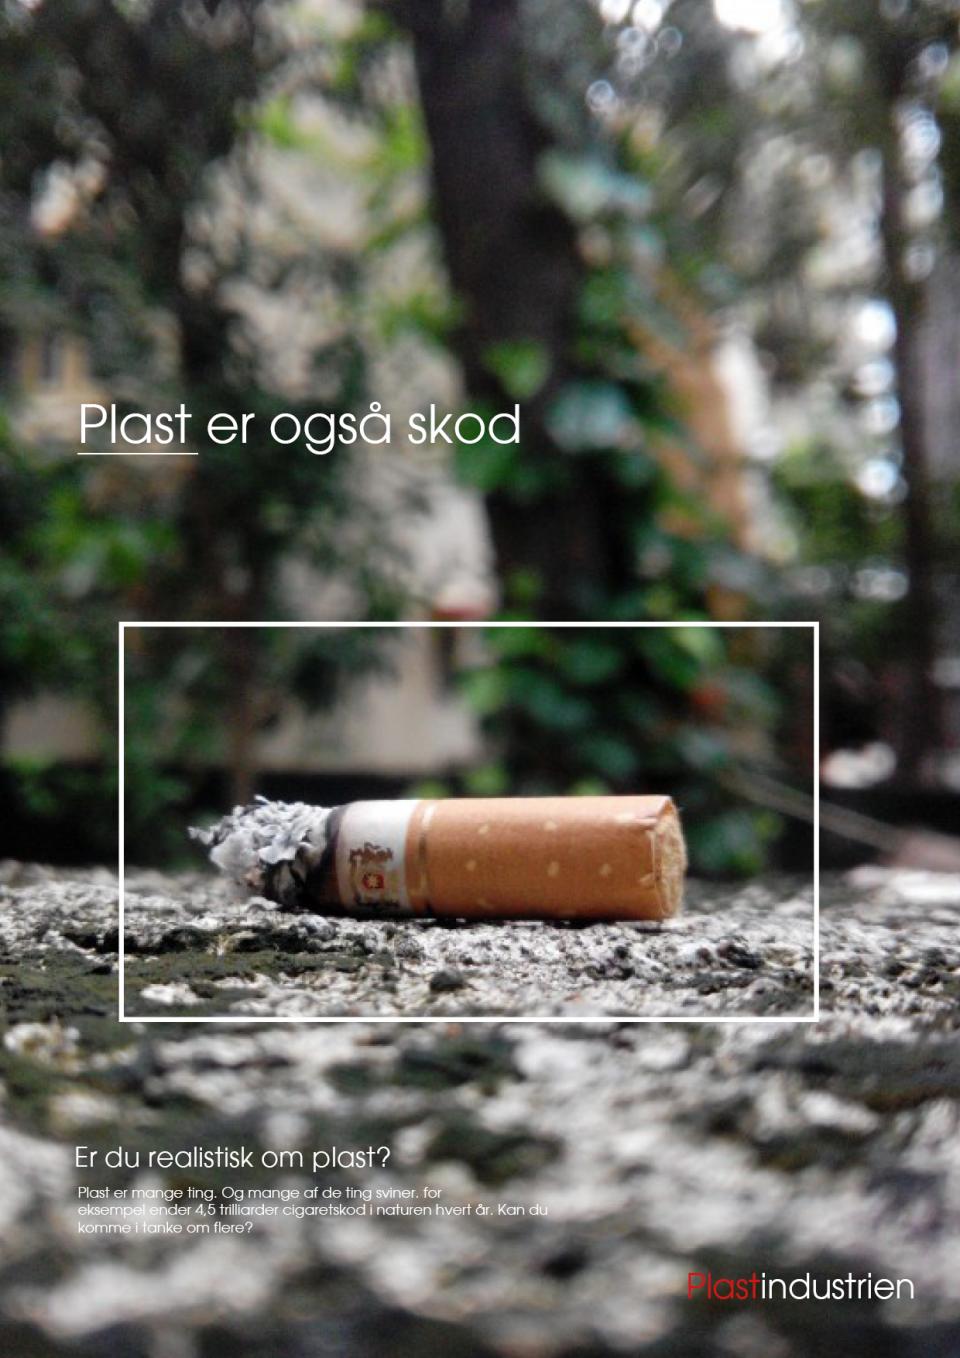 Cigaretskod